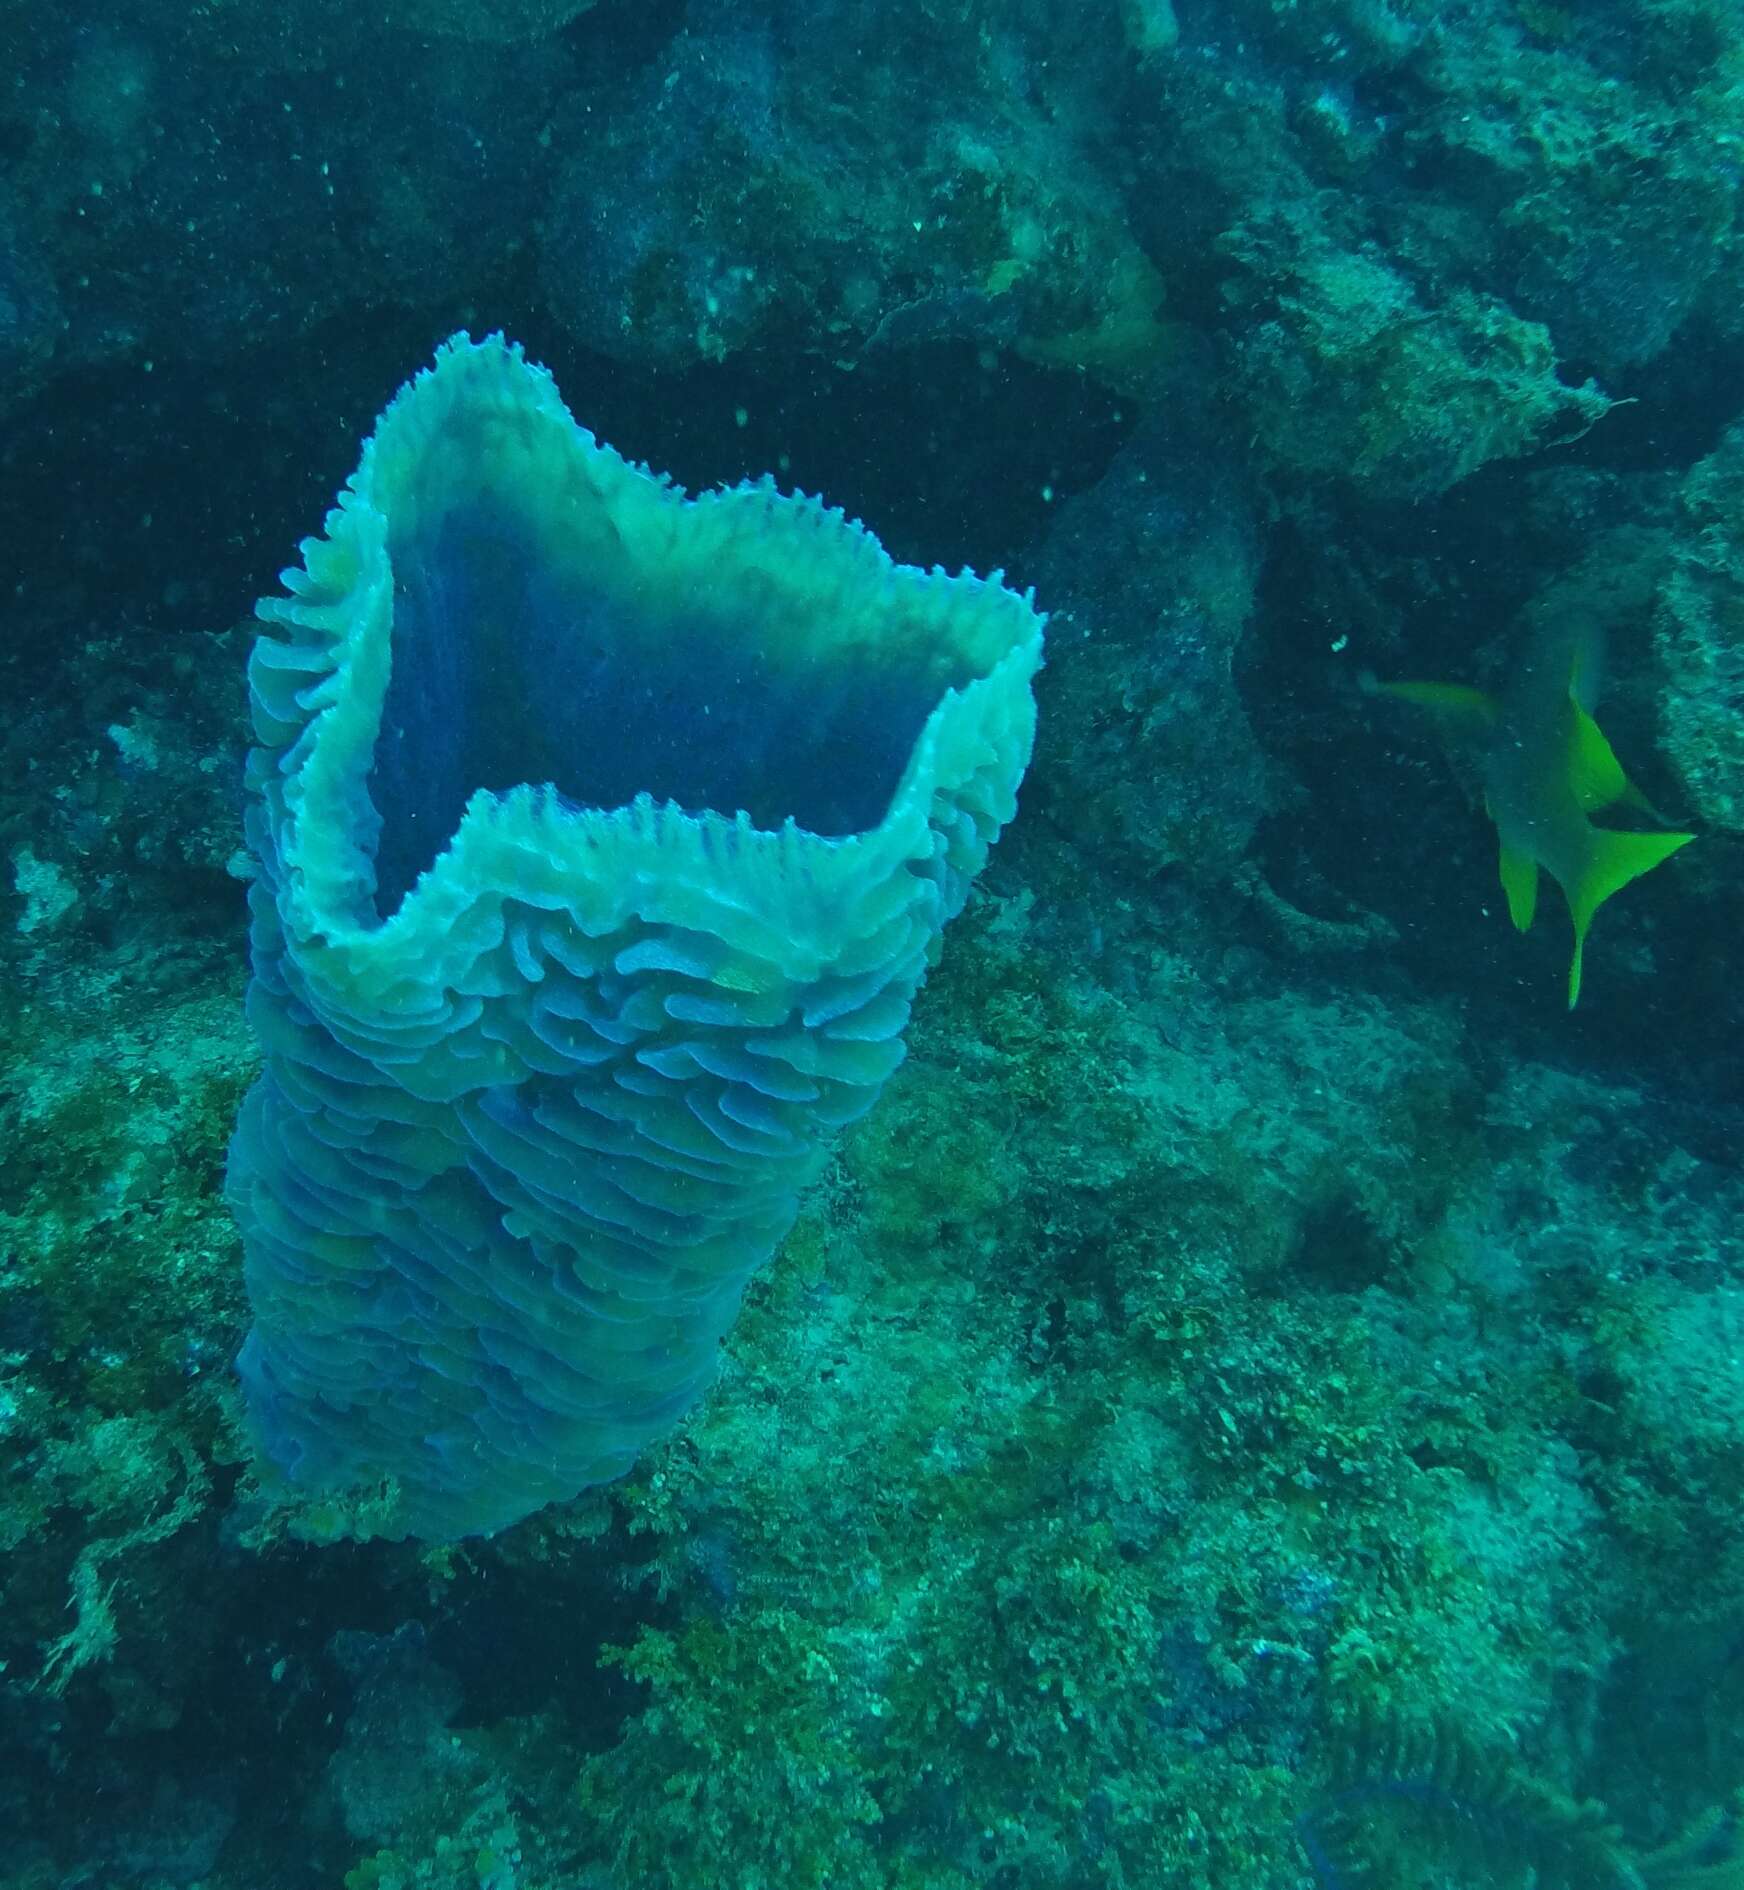 Image of Azure Vase Sponge